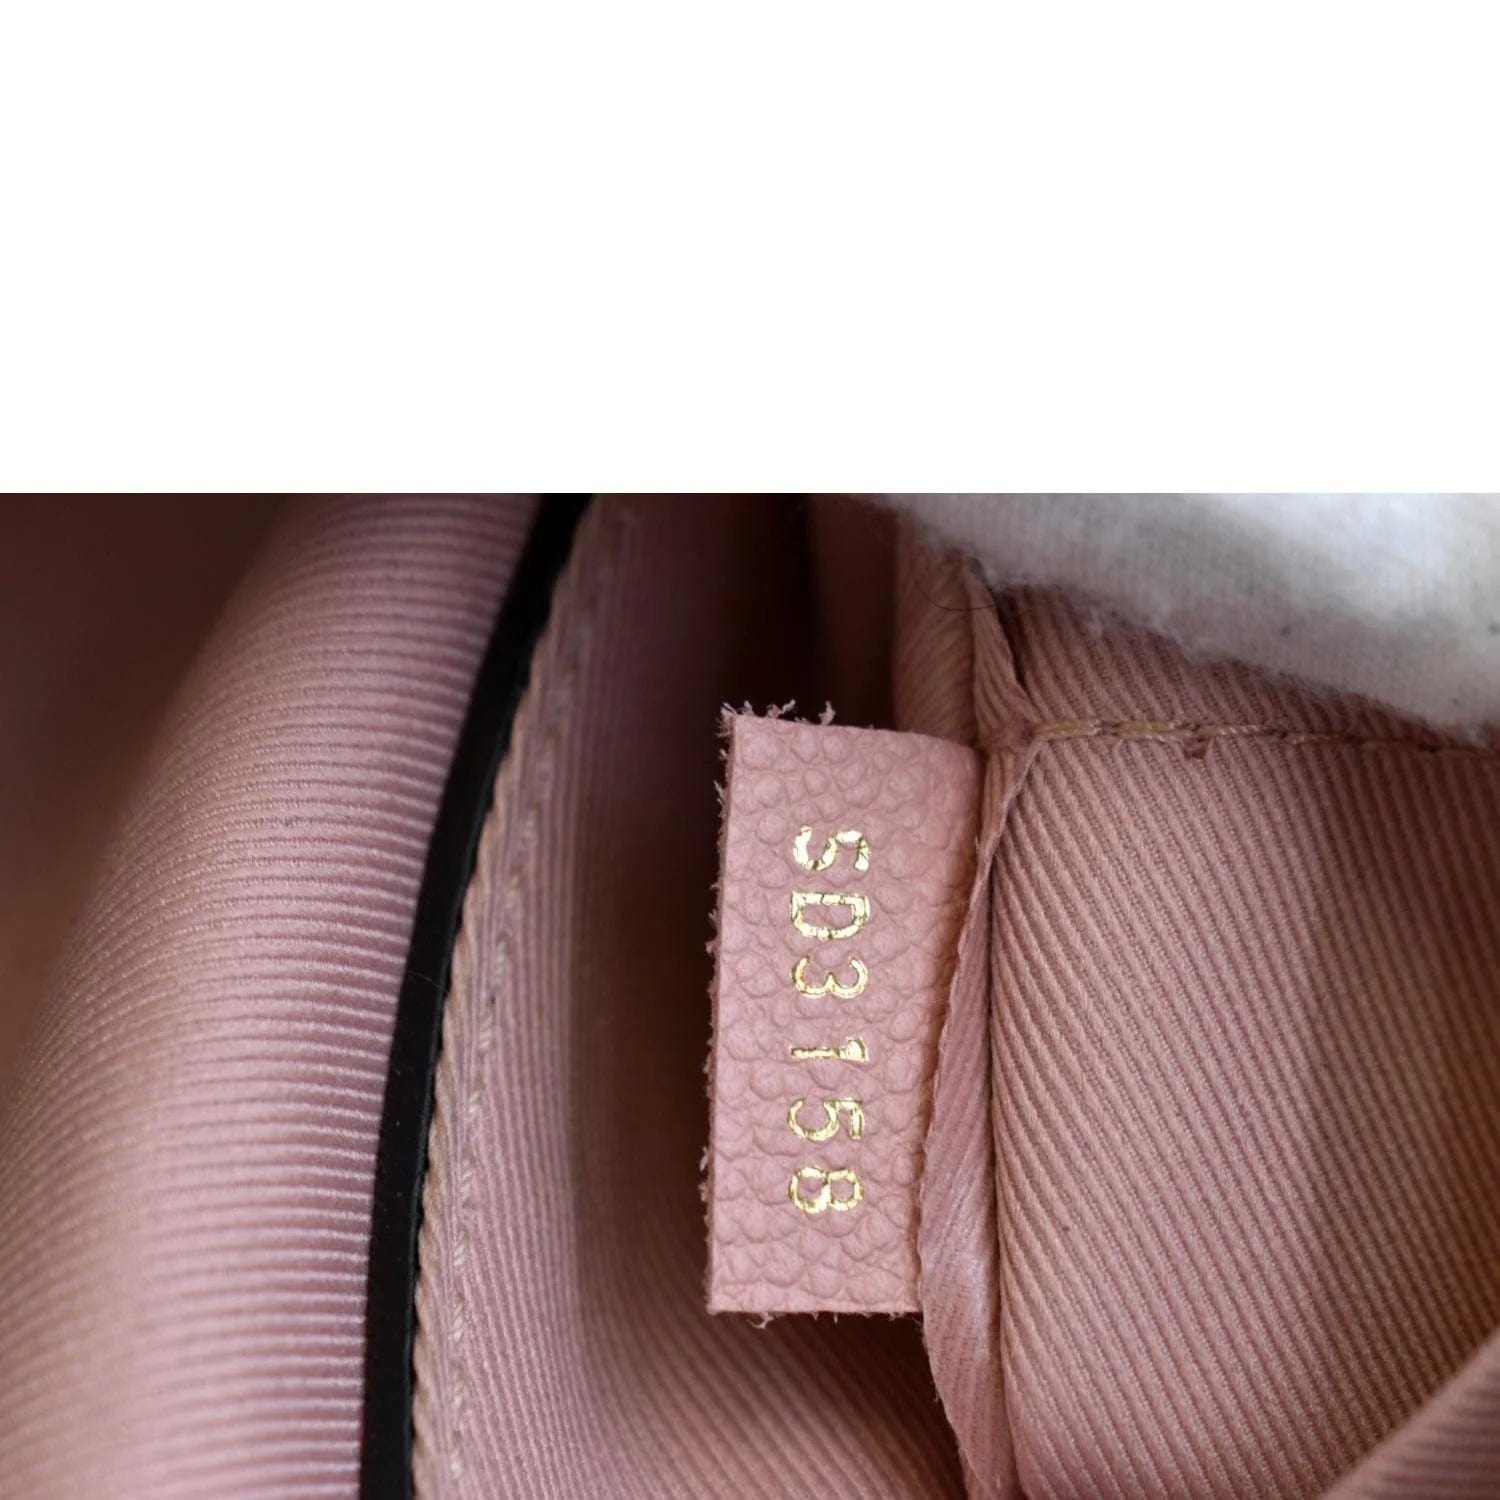 Louis Vuitton Blanche Bb Monogram Empreinte Leather Pink Calfskin Satc -  MyDesignerly